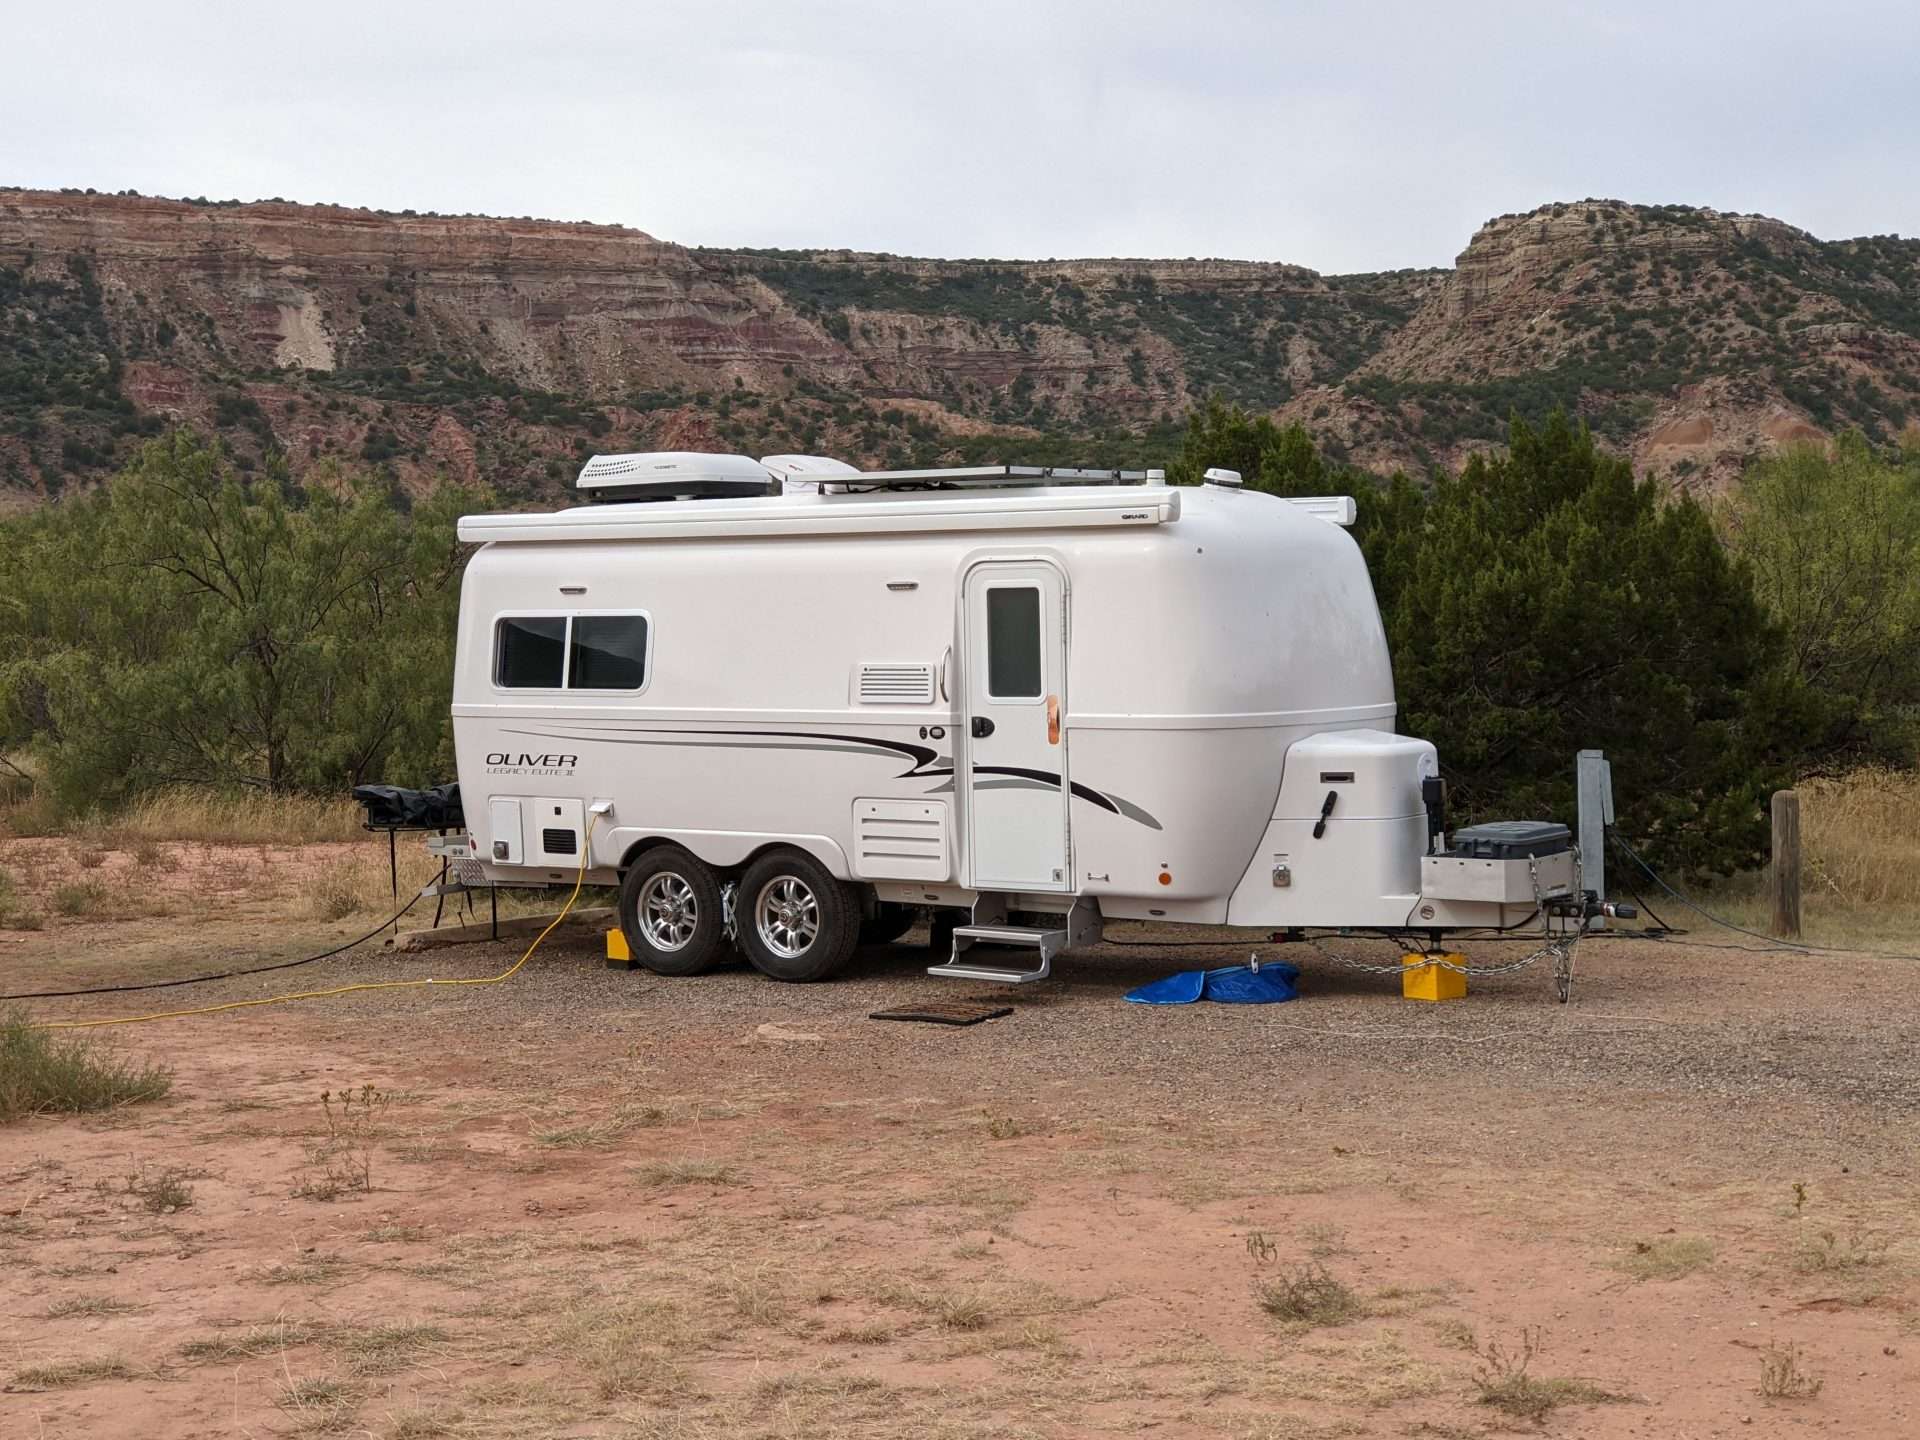 Oliver fiberglass RV camper parked at campsite.